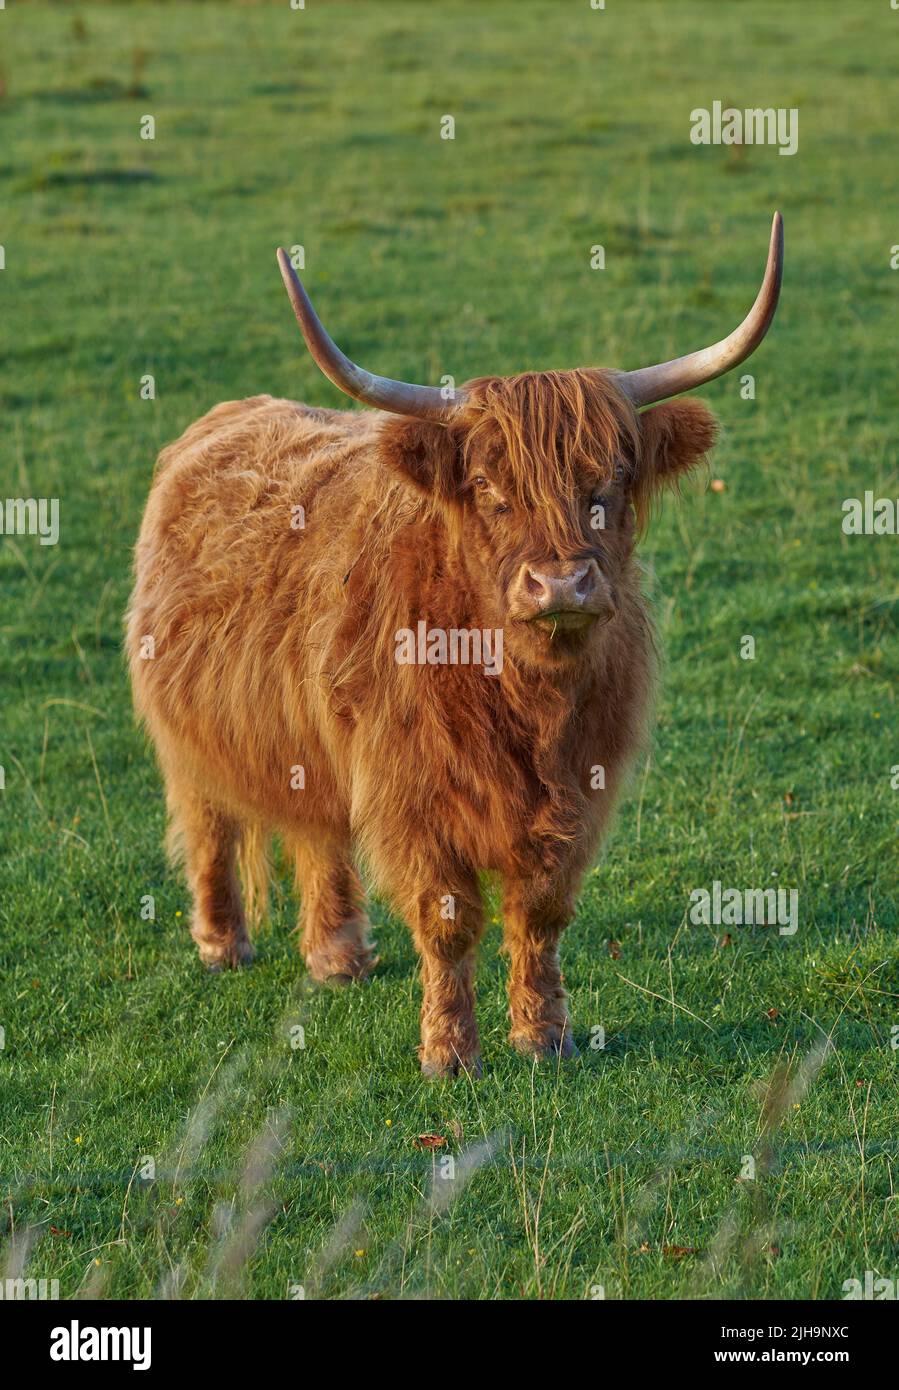 Zucht schottischer Rinder- und Viehzucht auf einer Rinderfarm für die Rindfleischindustrie. Landschaft mit Tieren in der Natur. Braune haarige Hochlandkuh mit Hörnern auf einem Stockfoto